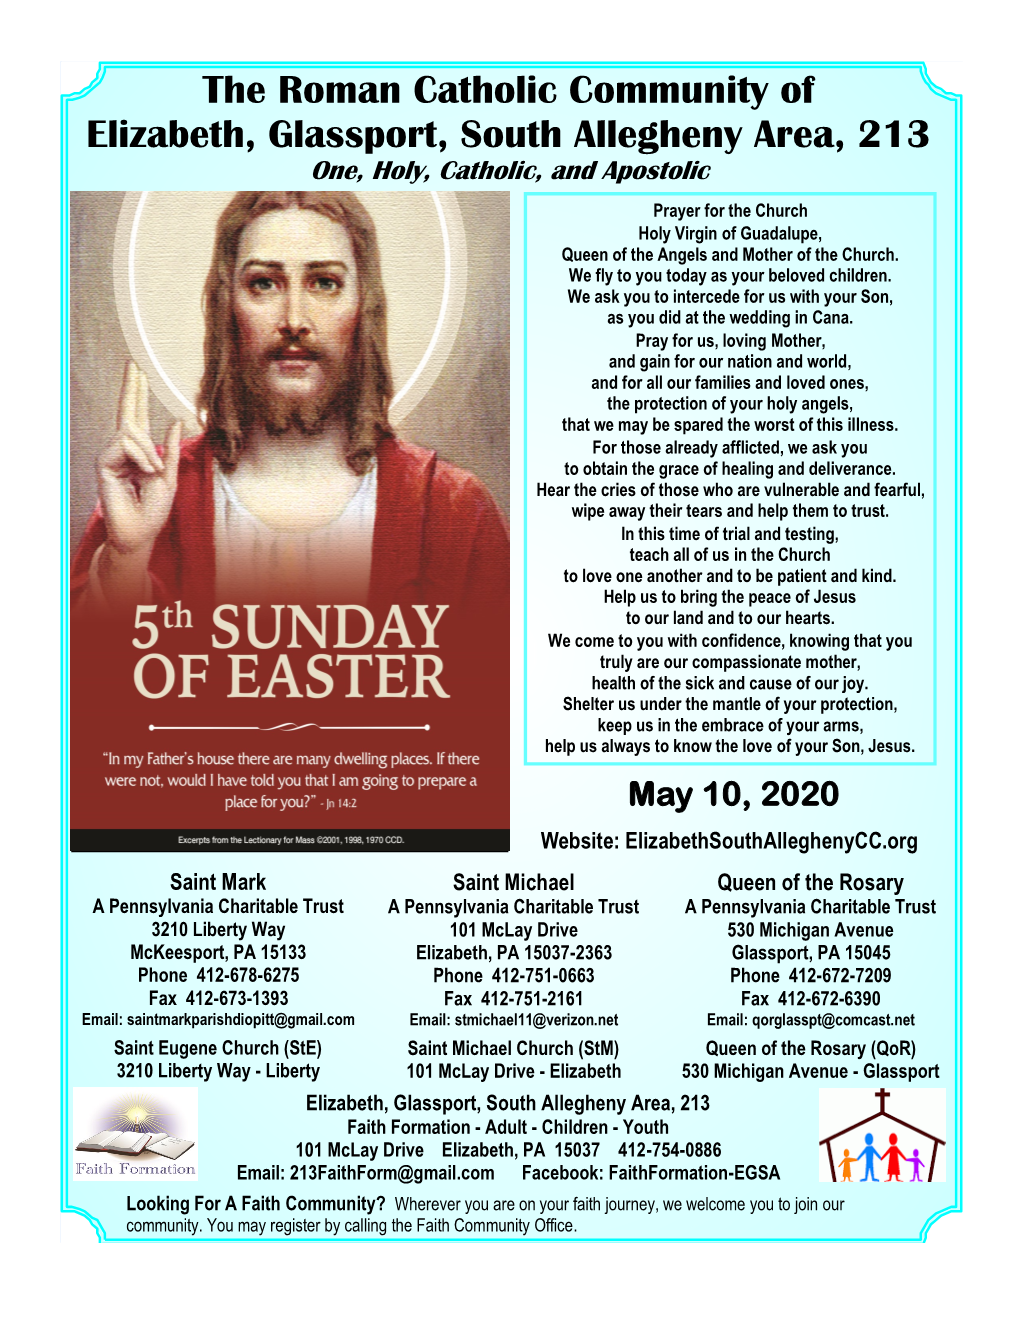 The Roman Catholic Community of Elizabeth, Glassport, South Allegheny Area, 213 One, Holy, Catholic, and Apostolic